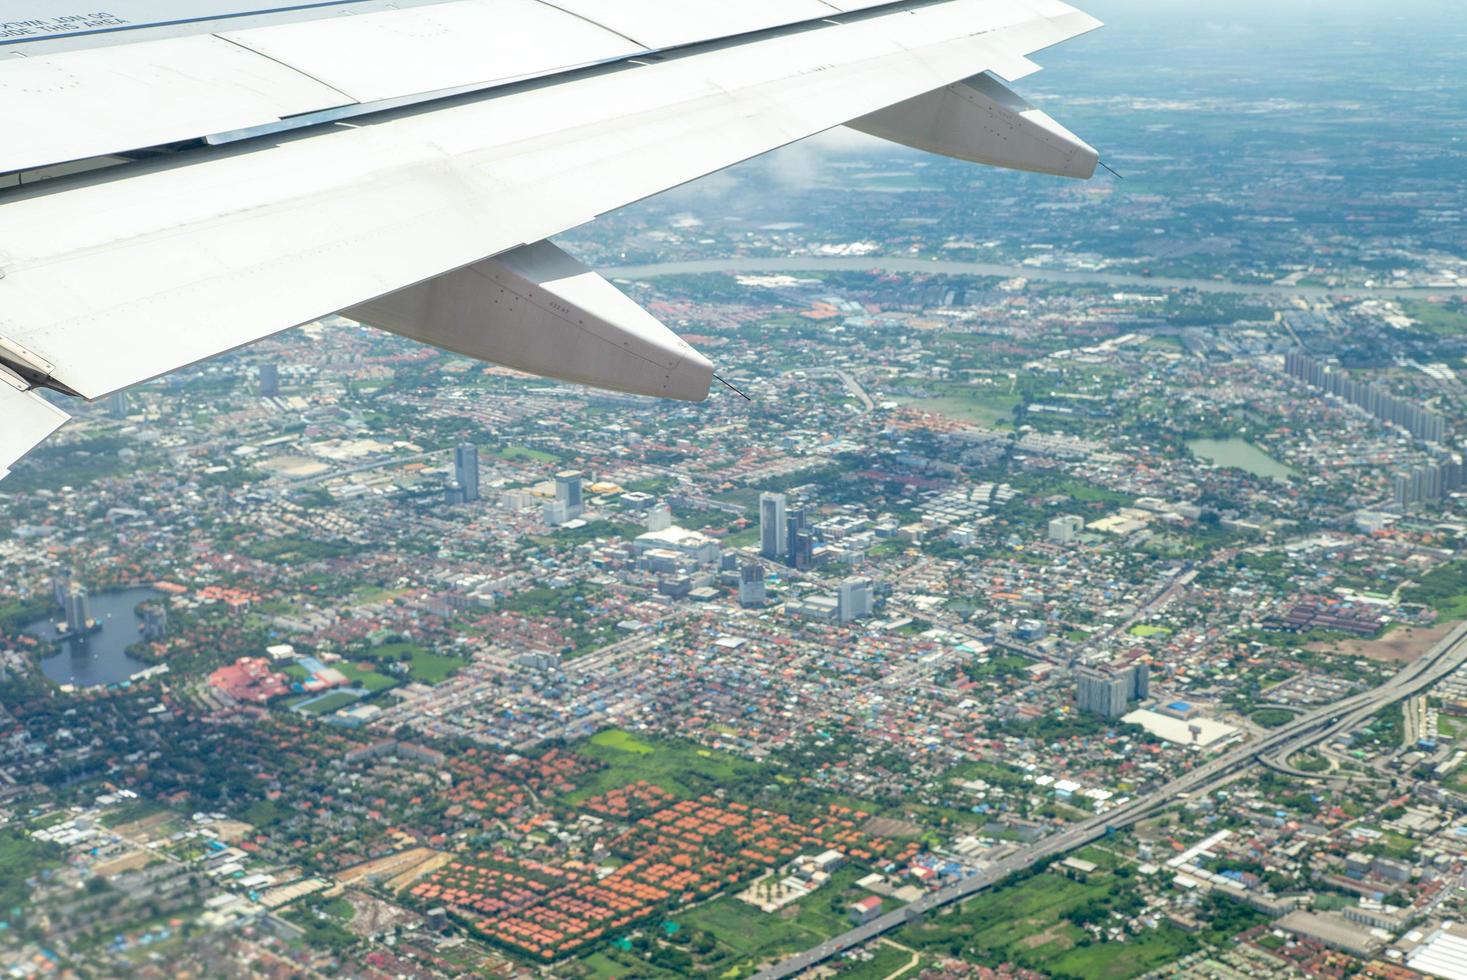 close-upvleugel van vliegtuig tijdens het vliegen in de lucht met stadsgezicht hieronder foto